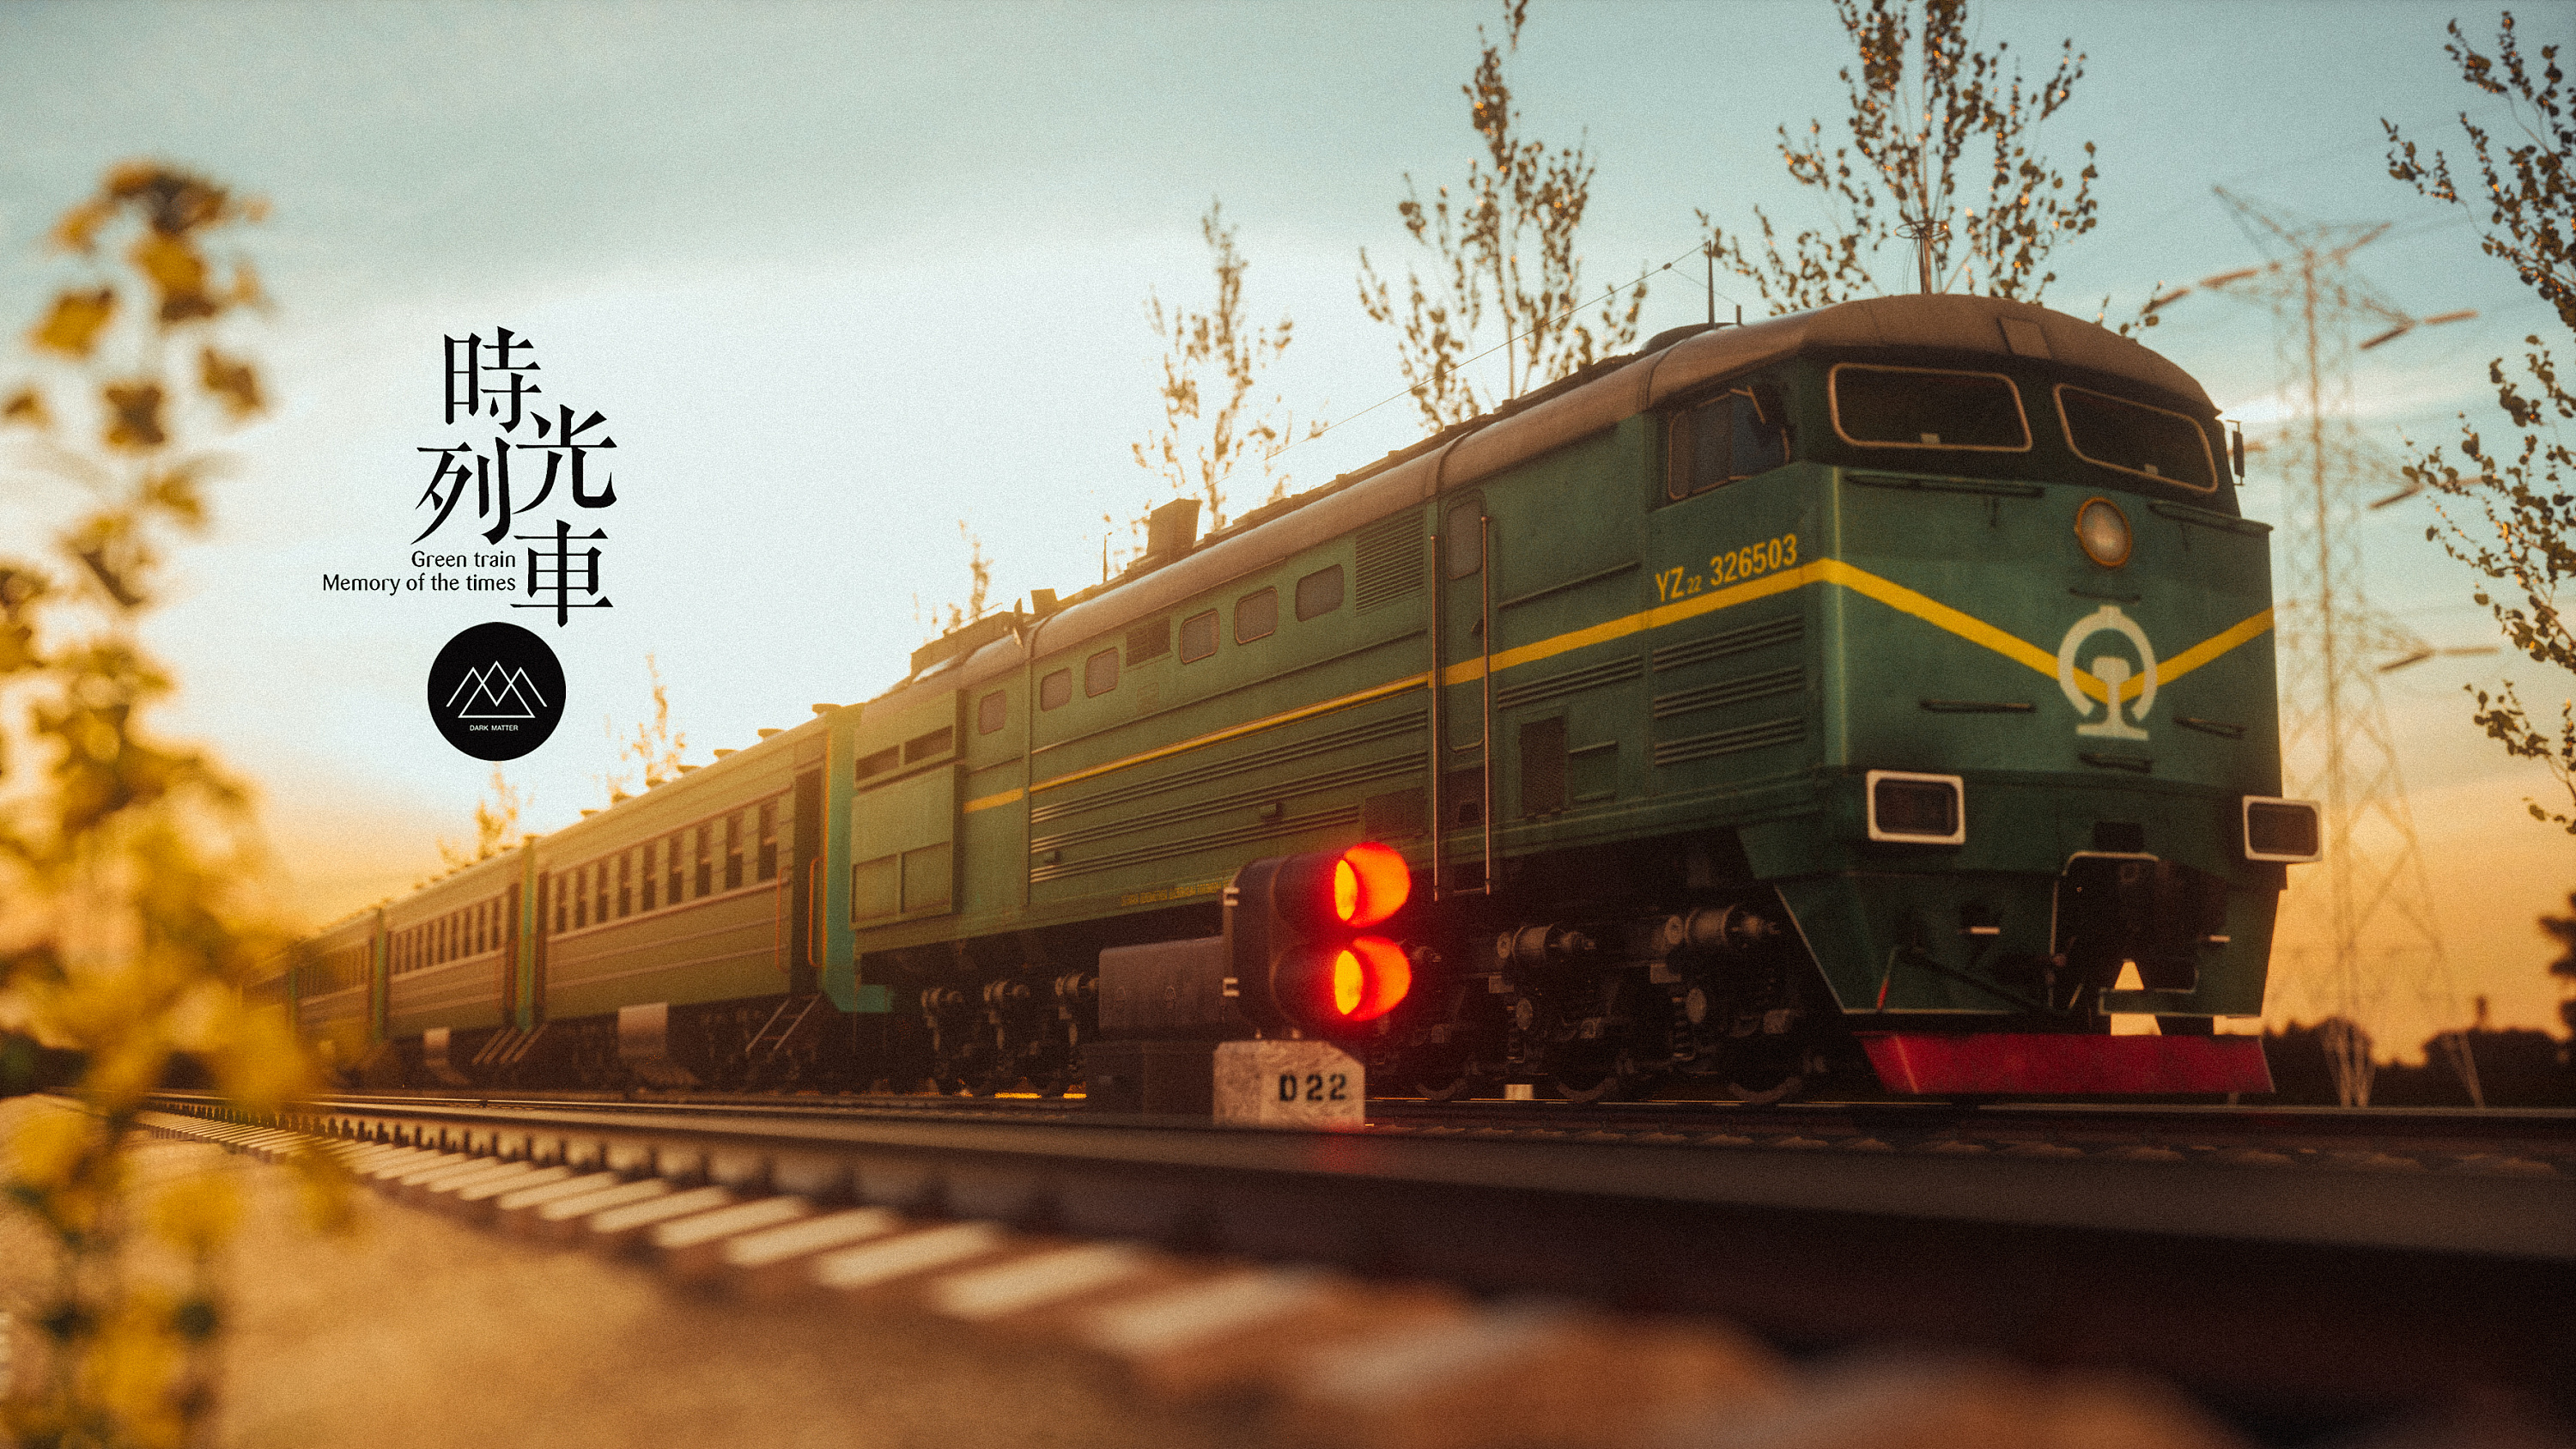 【时光列车】绿皮火车的记忆